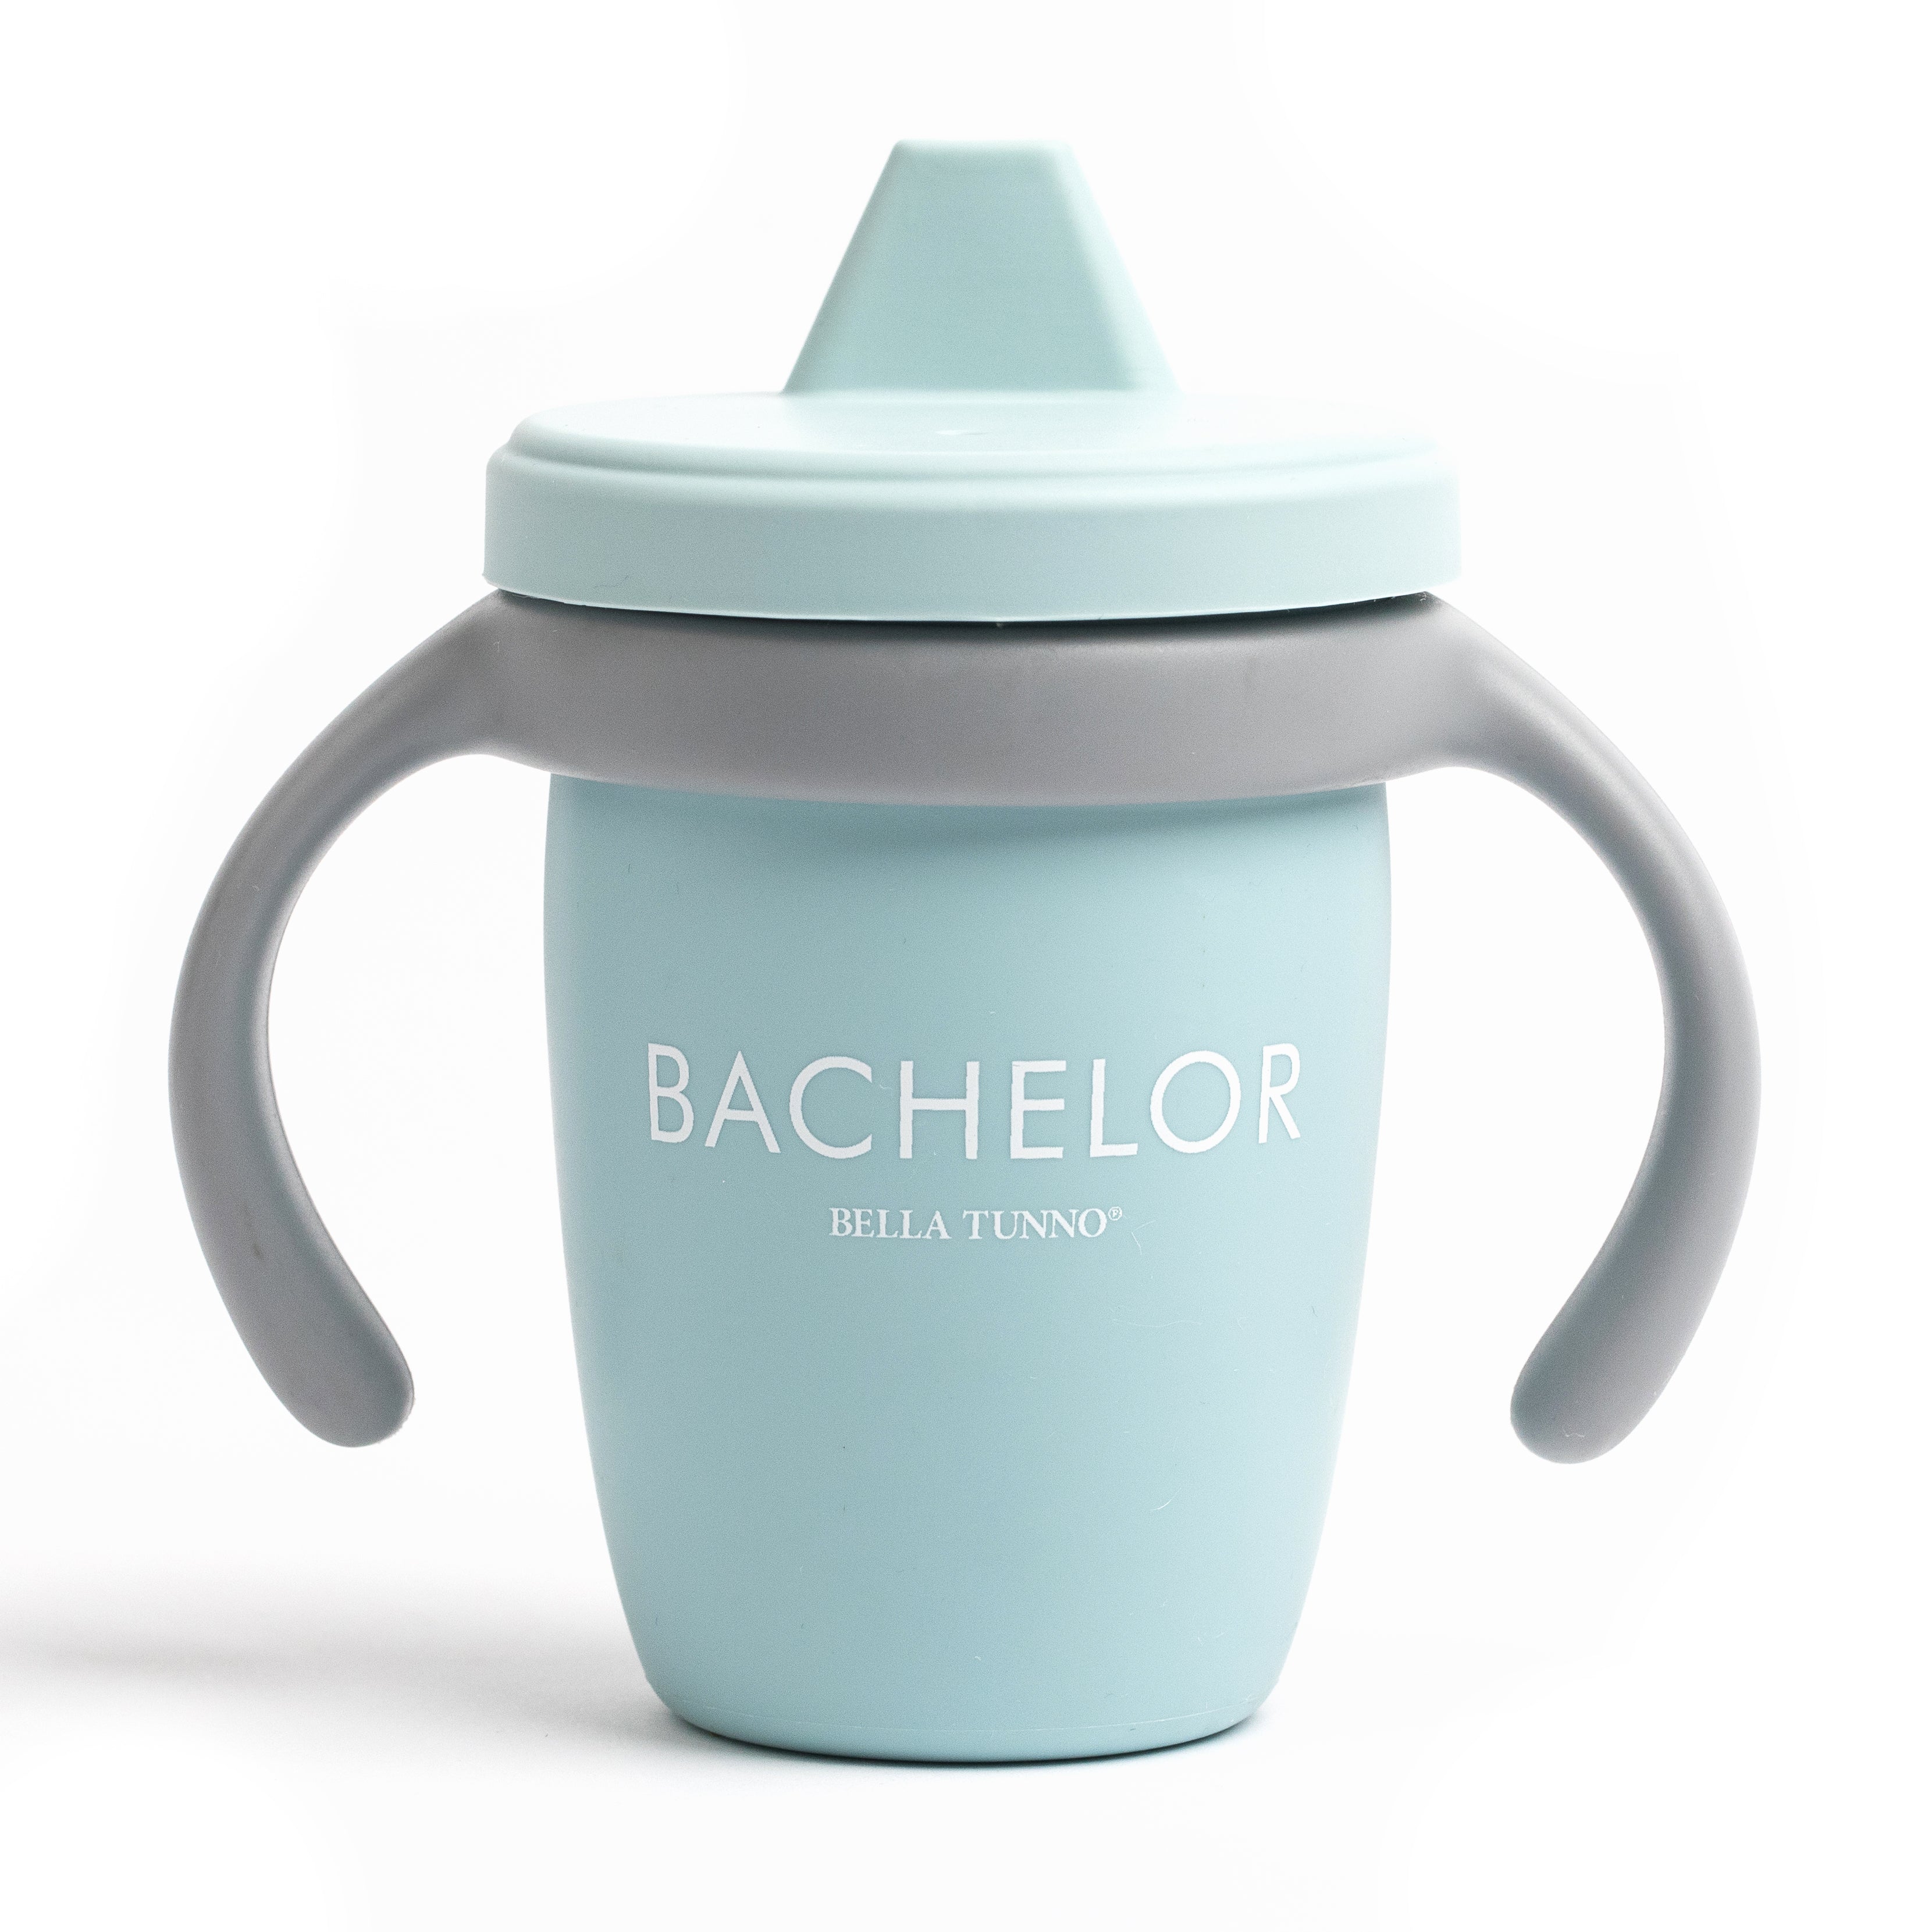 Bella Tunno 'Bachelor' Happy Sippy Cup